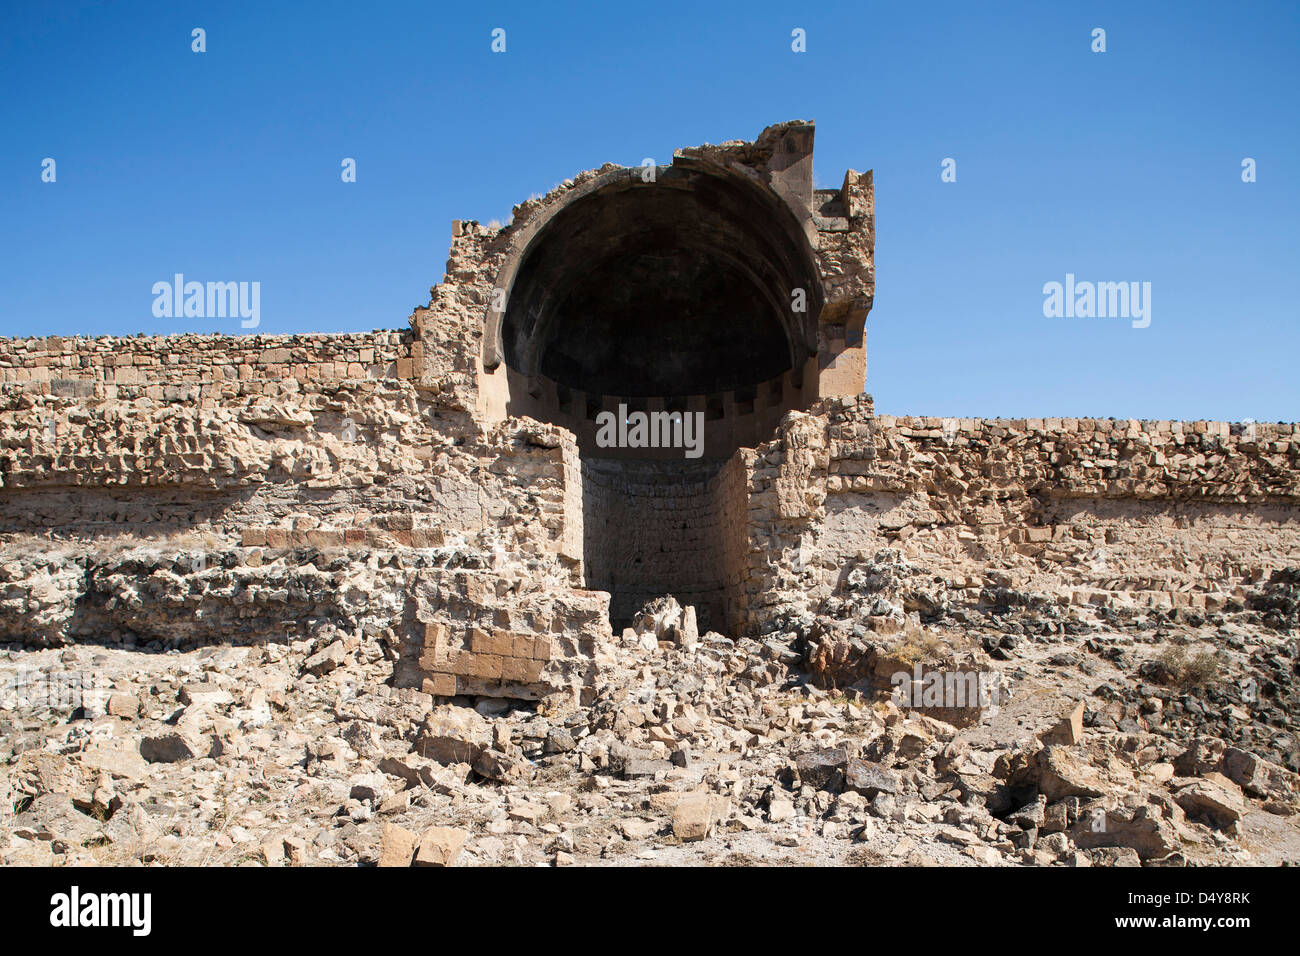 Muros y construyendo, ruinas de ani, Kars, zona noreste de Anatolia, Turquía, Asia Foto de stock